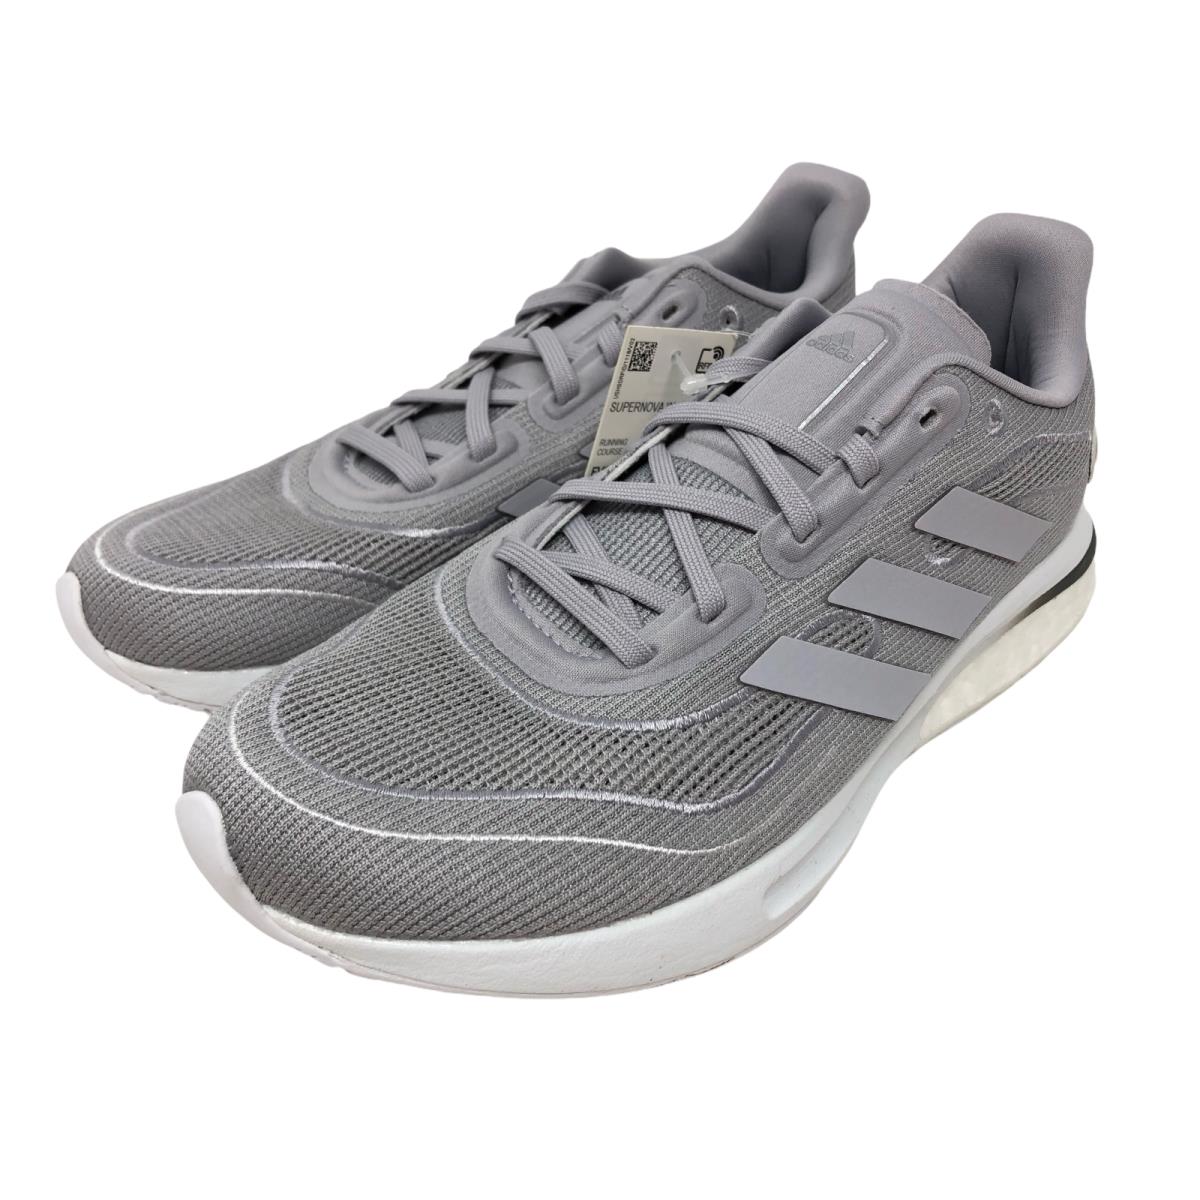 Adidas shoes Supernova - Gray 4